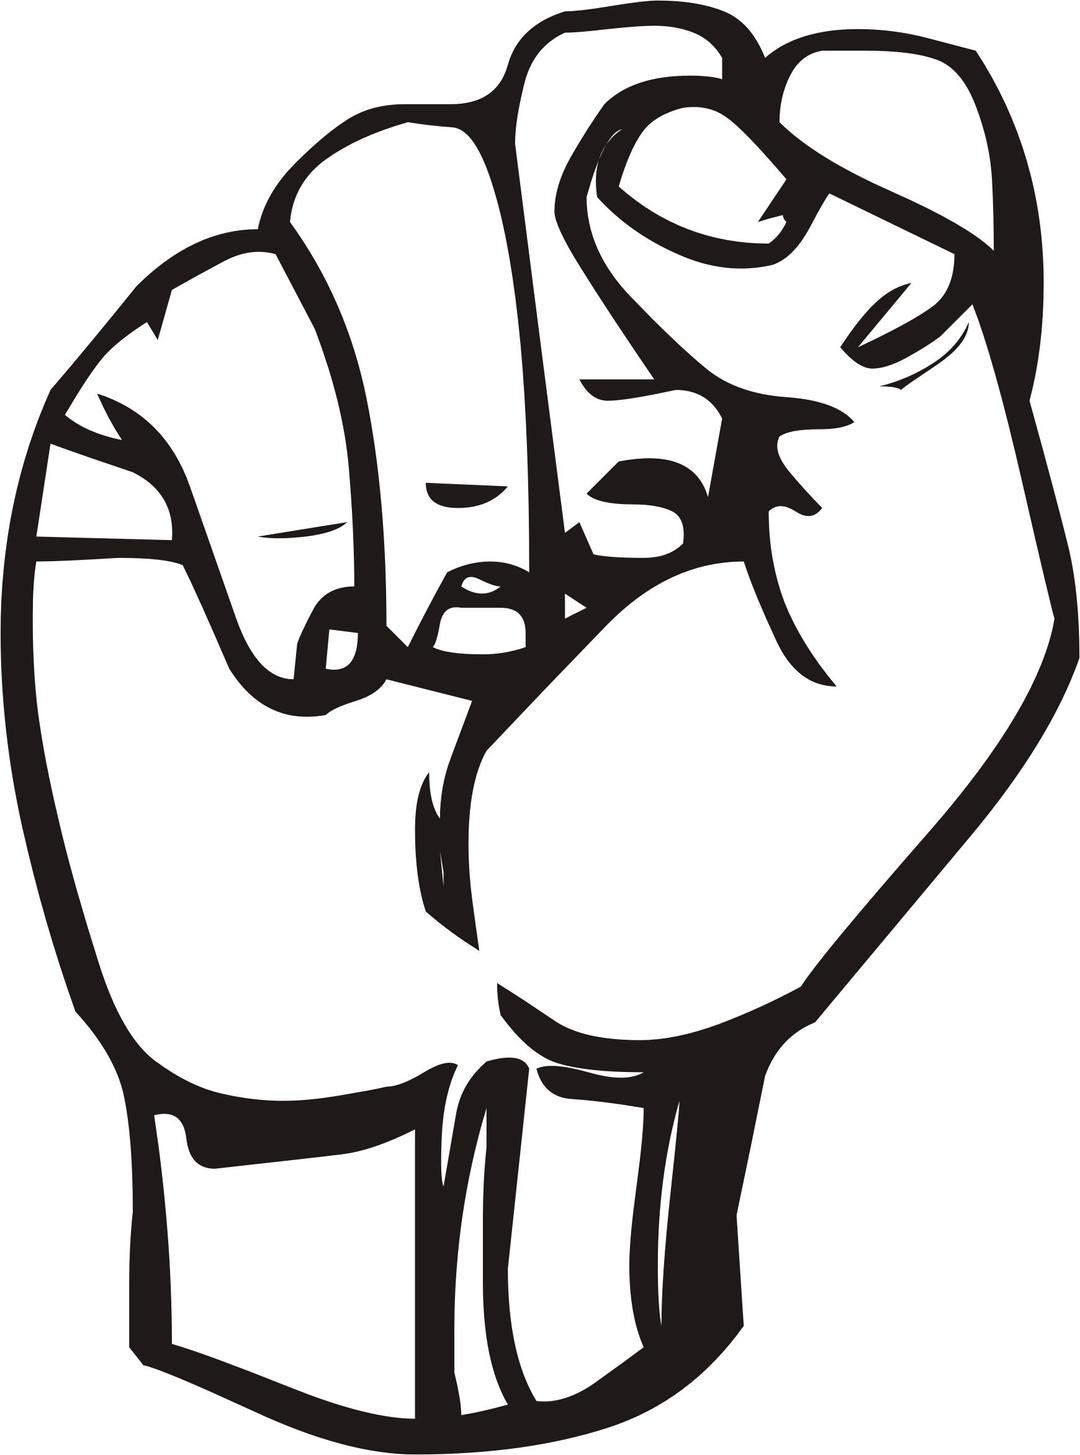 Sign language S, fist png transparent